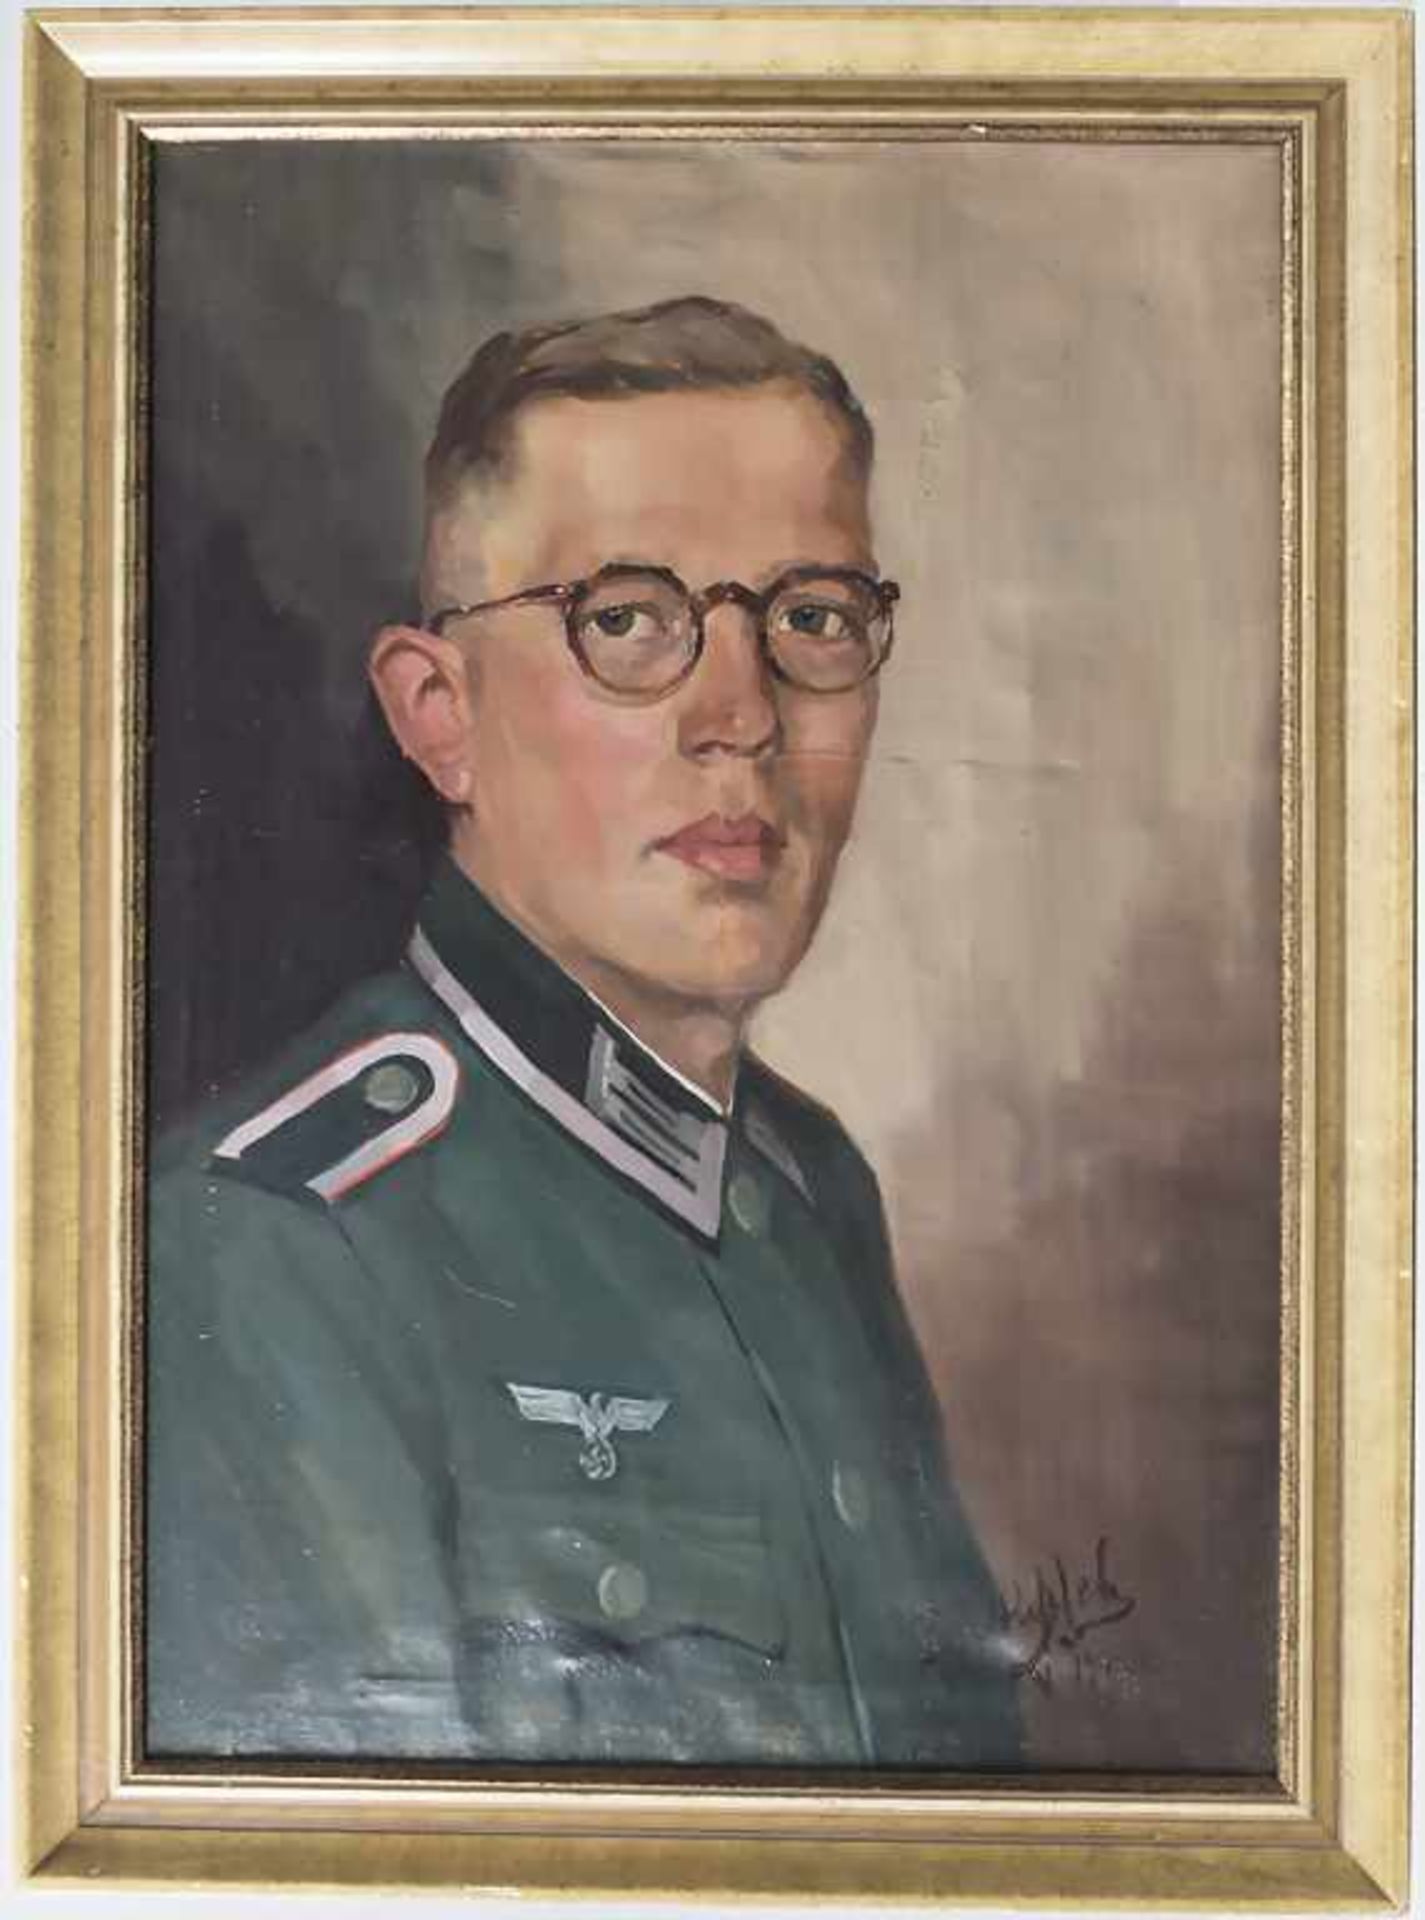 Künstler der 1930/40er Jahre, 'Soldat des 3. Reiches' / 'Soldier of the Third Reich'T - Bild 4 aus 7